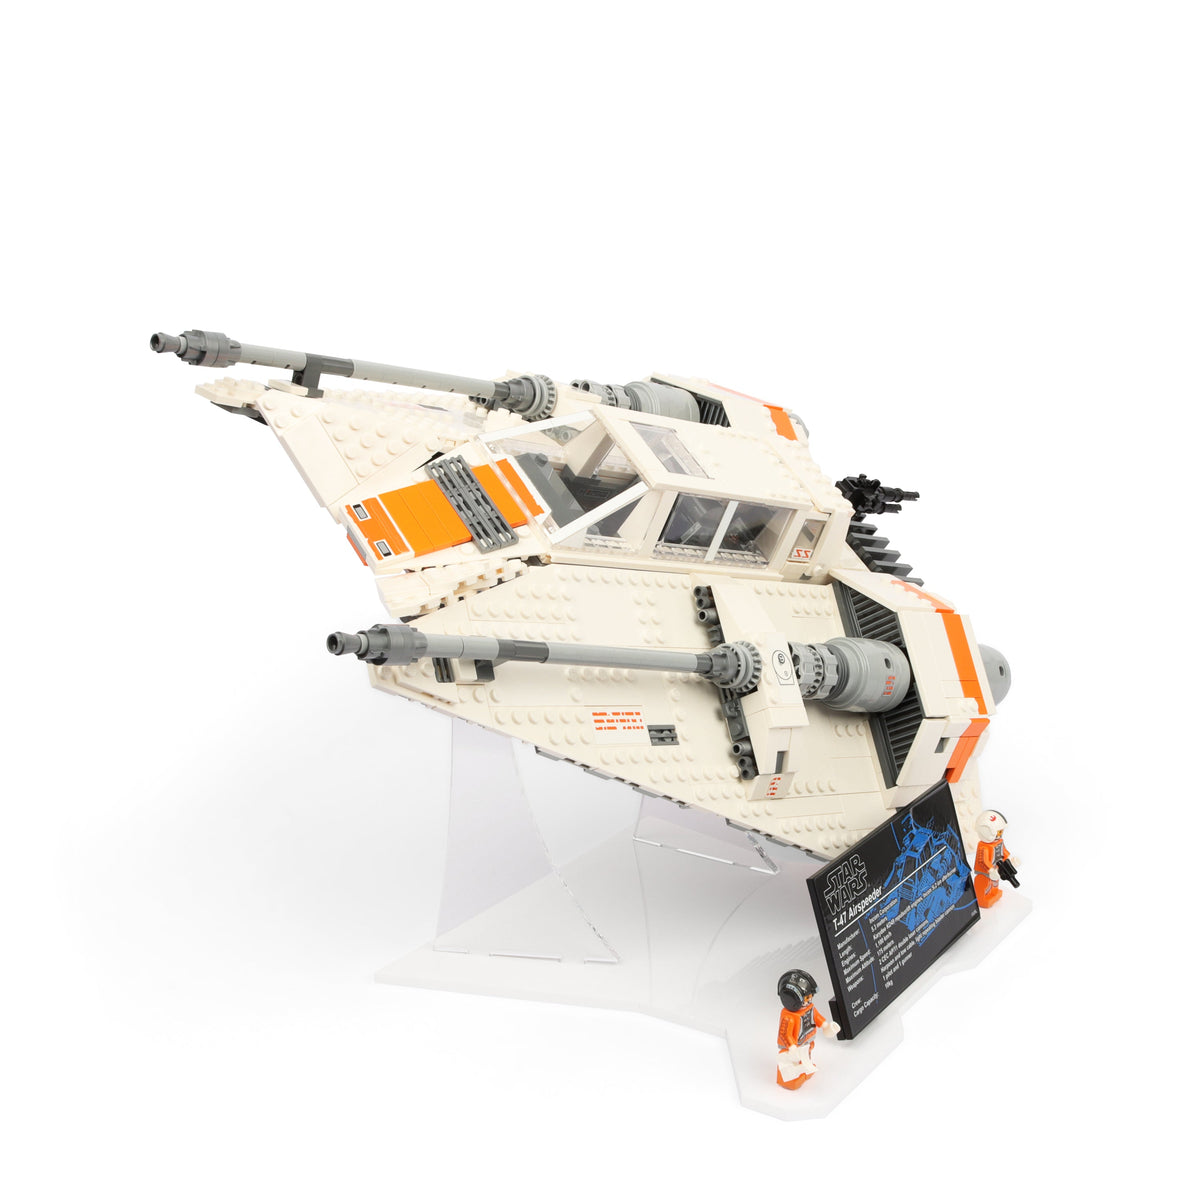 LEGO Star Wars UCS Snowspeeder 75144 Display Stand